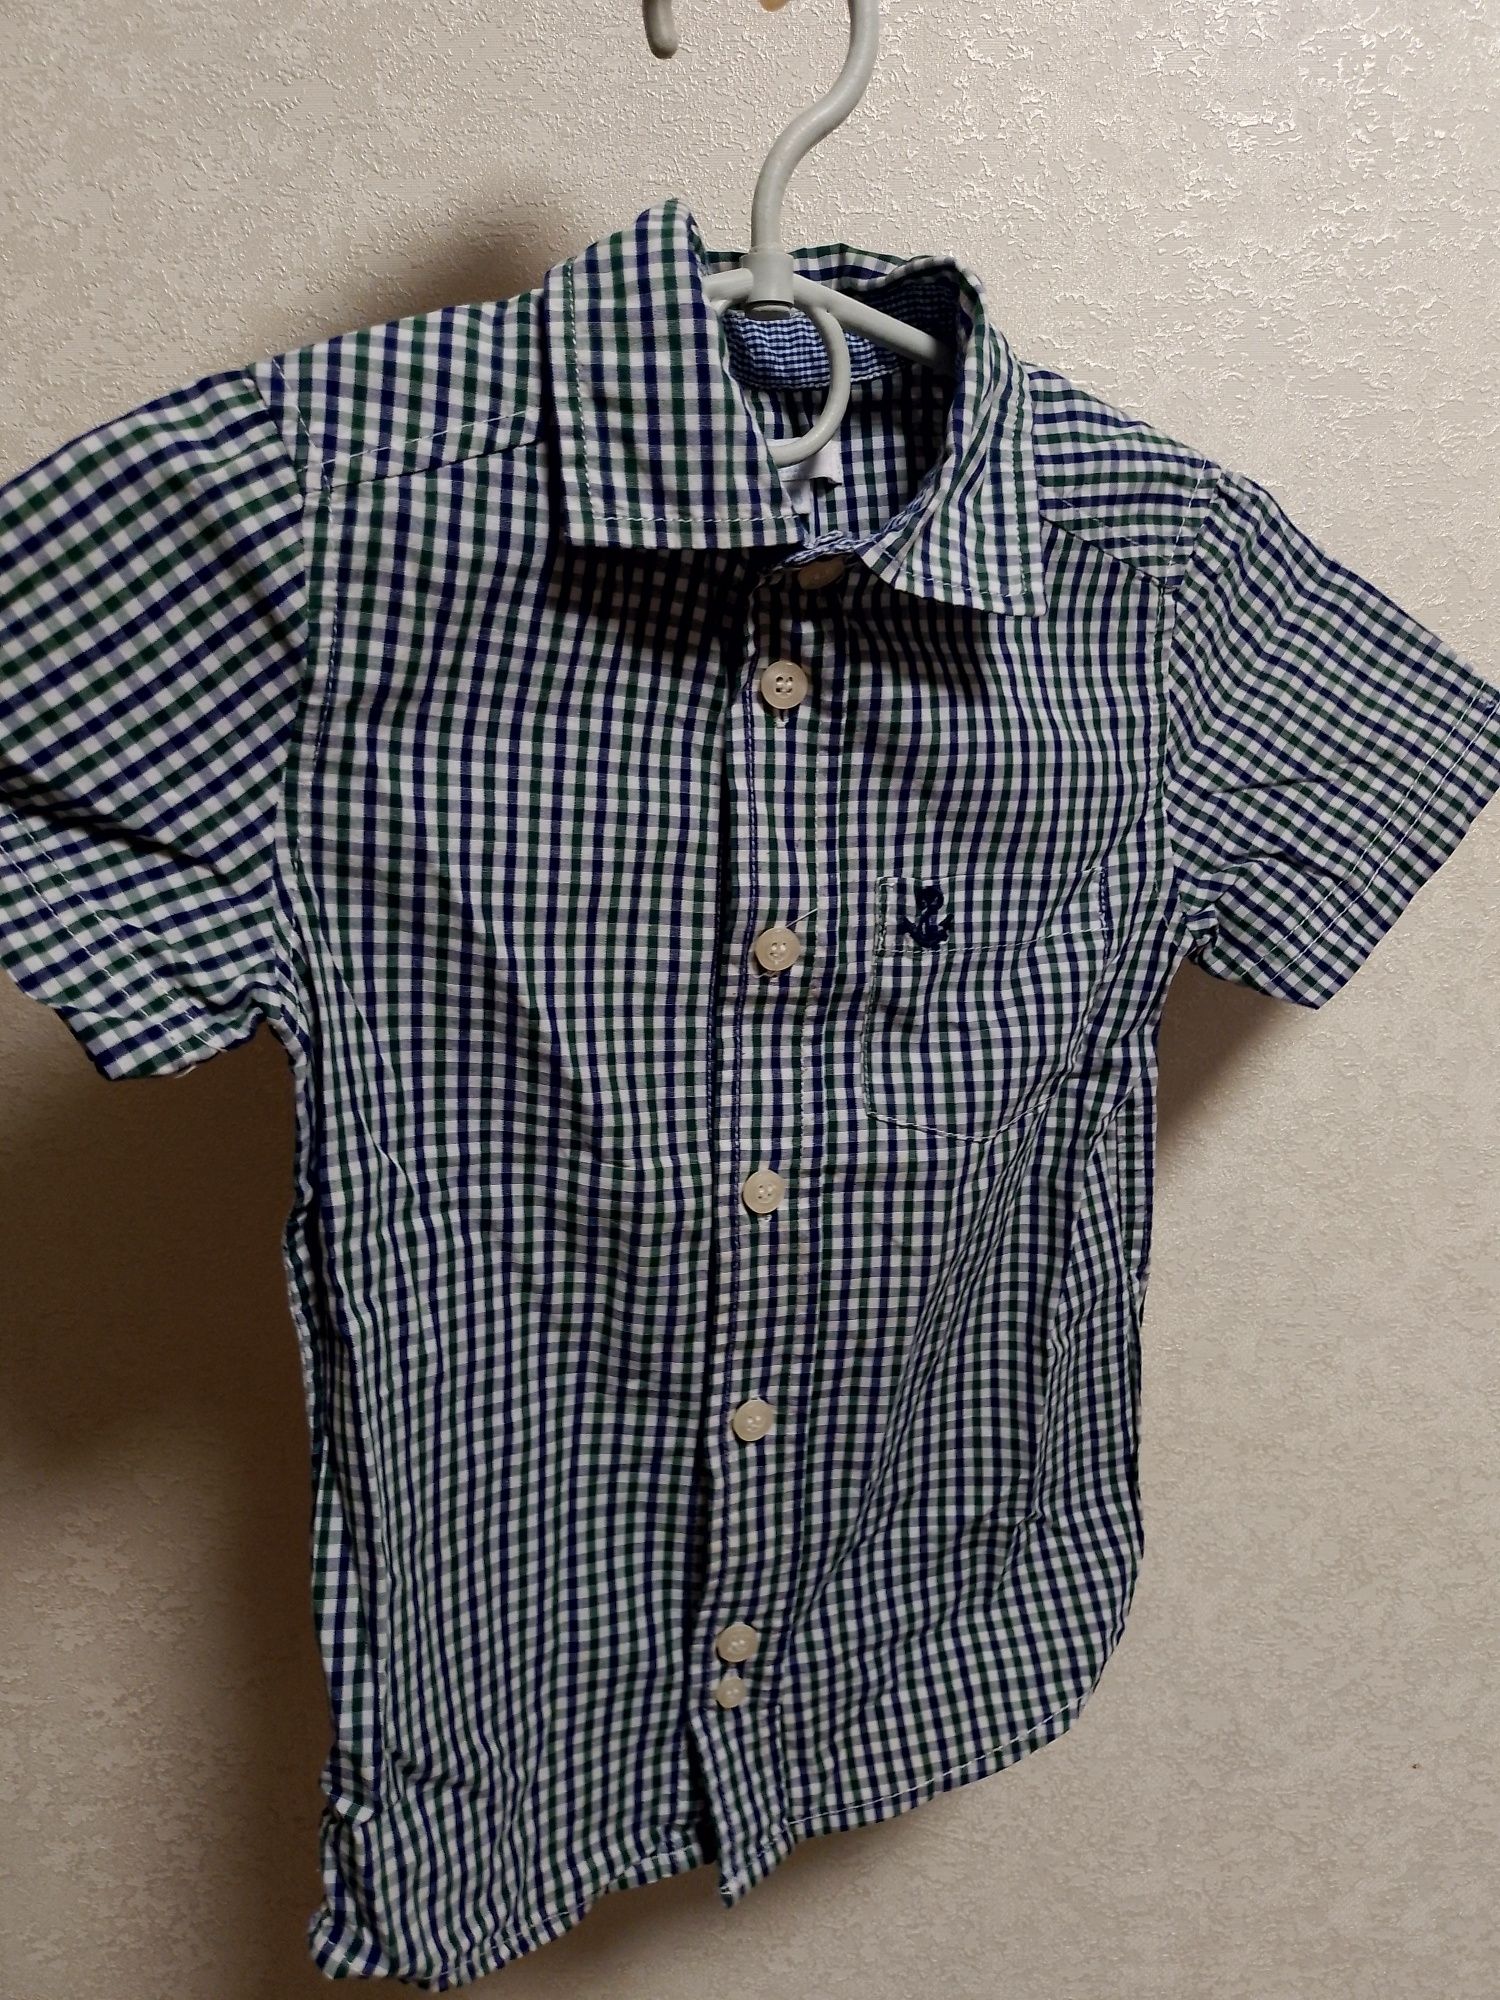 Клетчатая рубашка с коротким рукавом для мальчика 2,5-3-3,5 года 98 р.